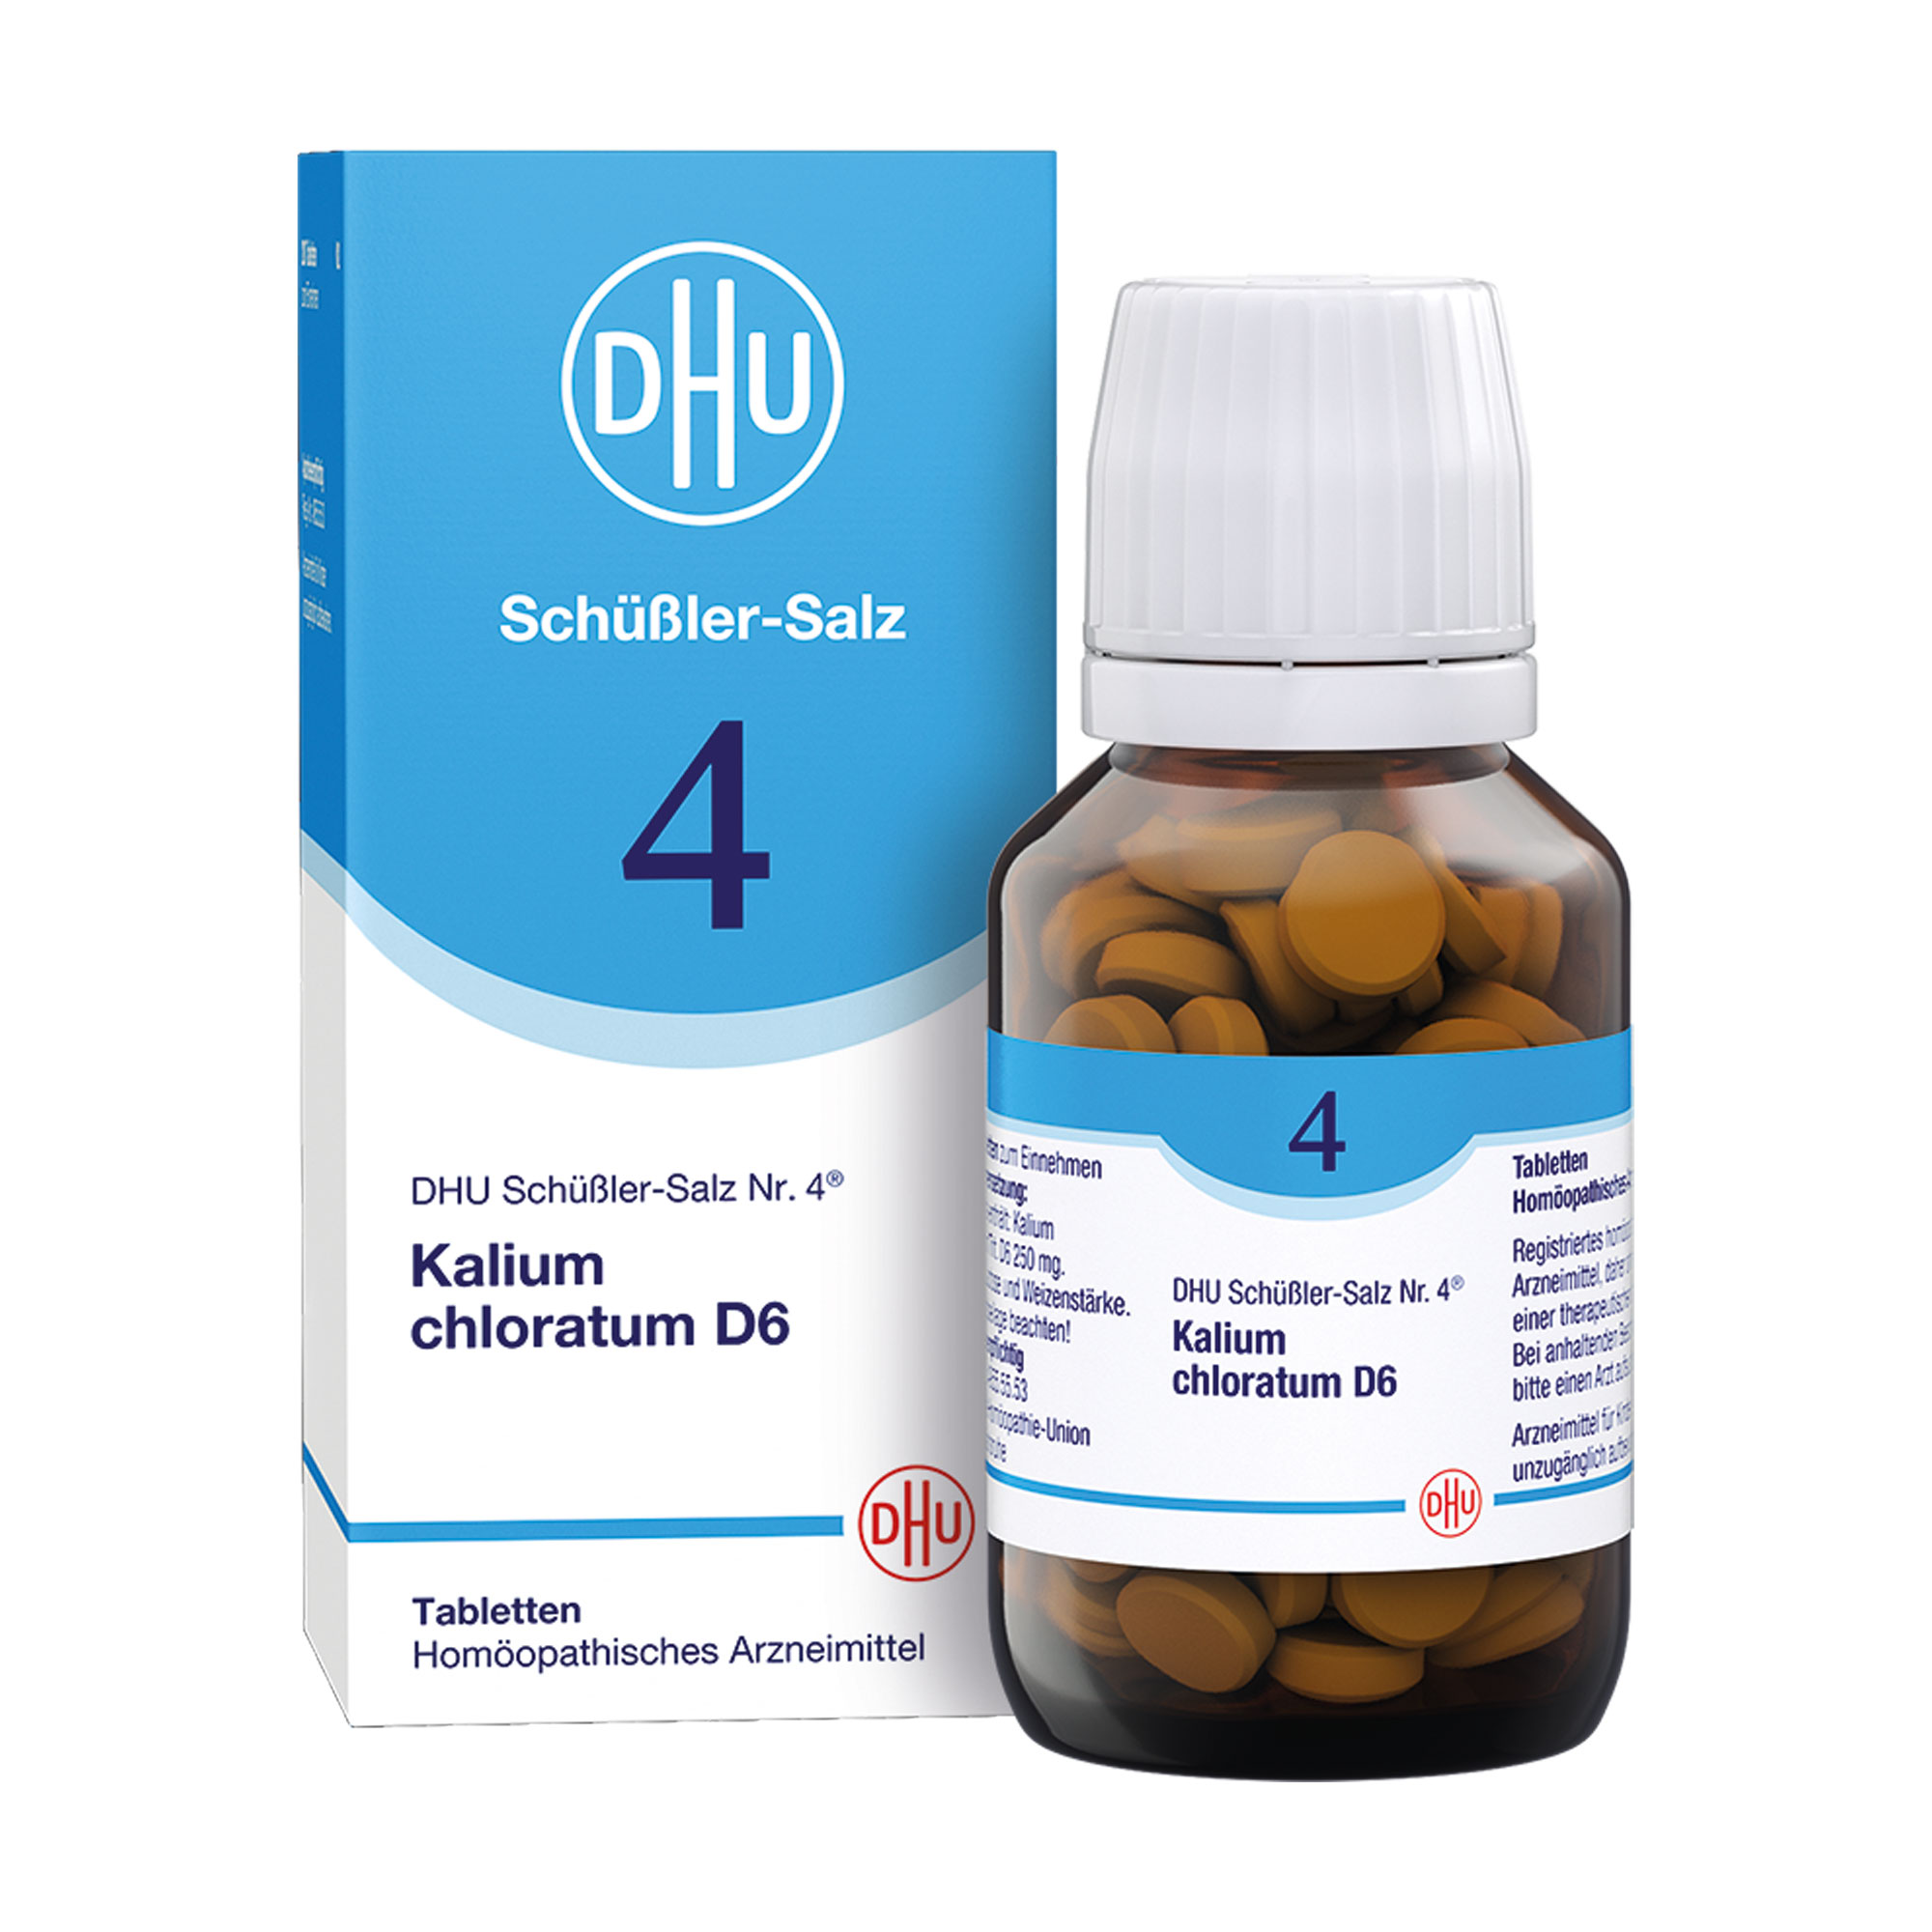 Homöopathisches Arzneimittel mit Kalium chloratum Trit. D6.